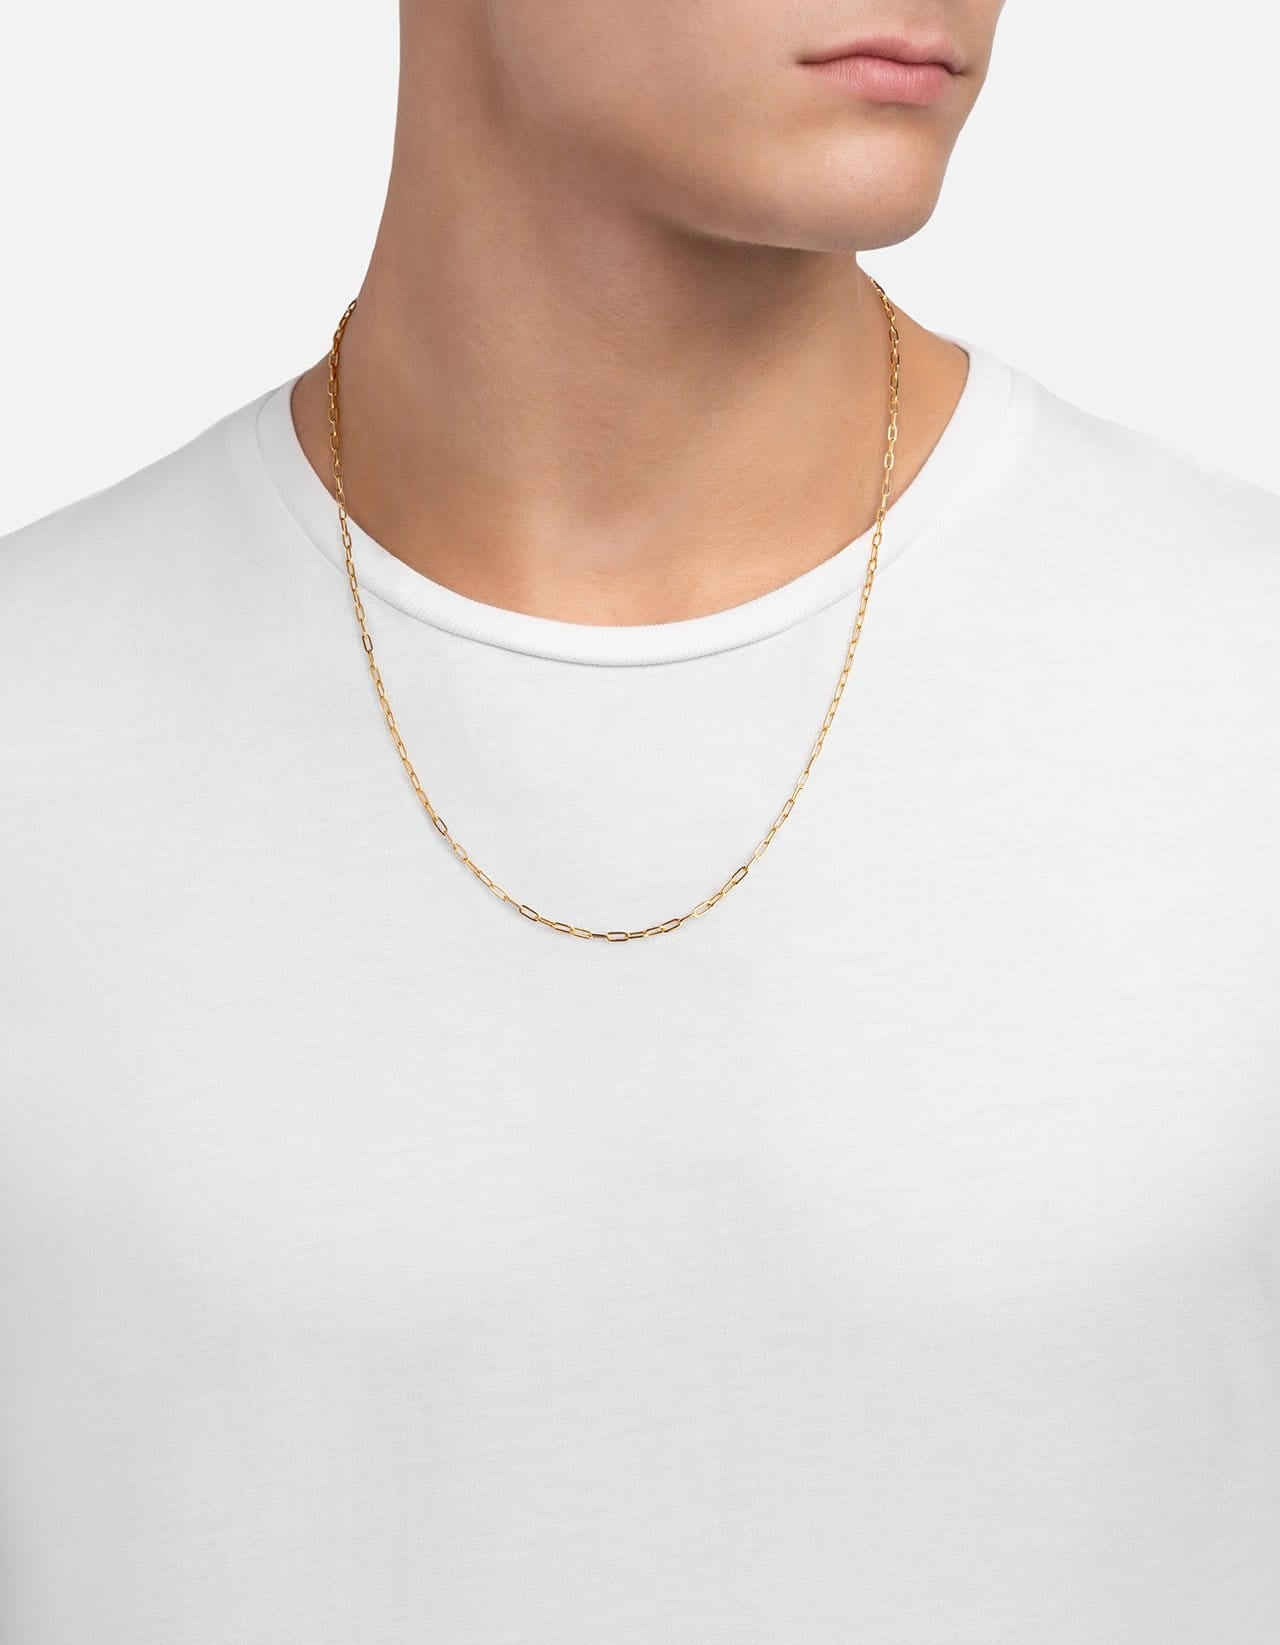 Volt Link Annex Clasp Necklace, Gold Vermeil, Men's Necklaces